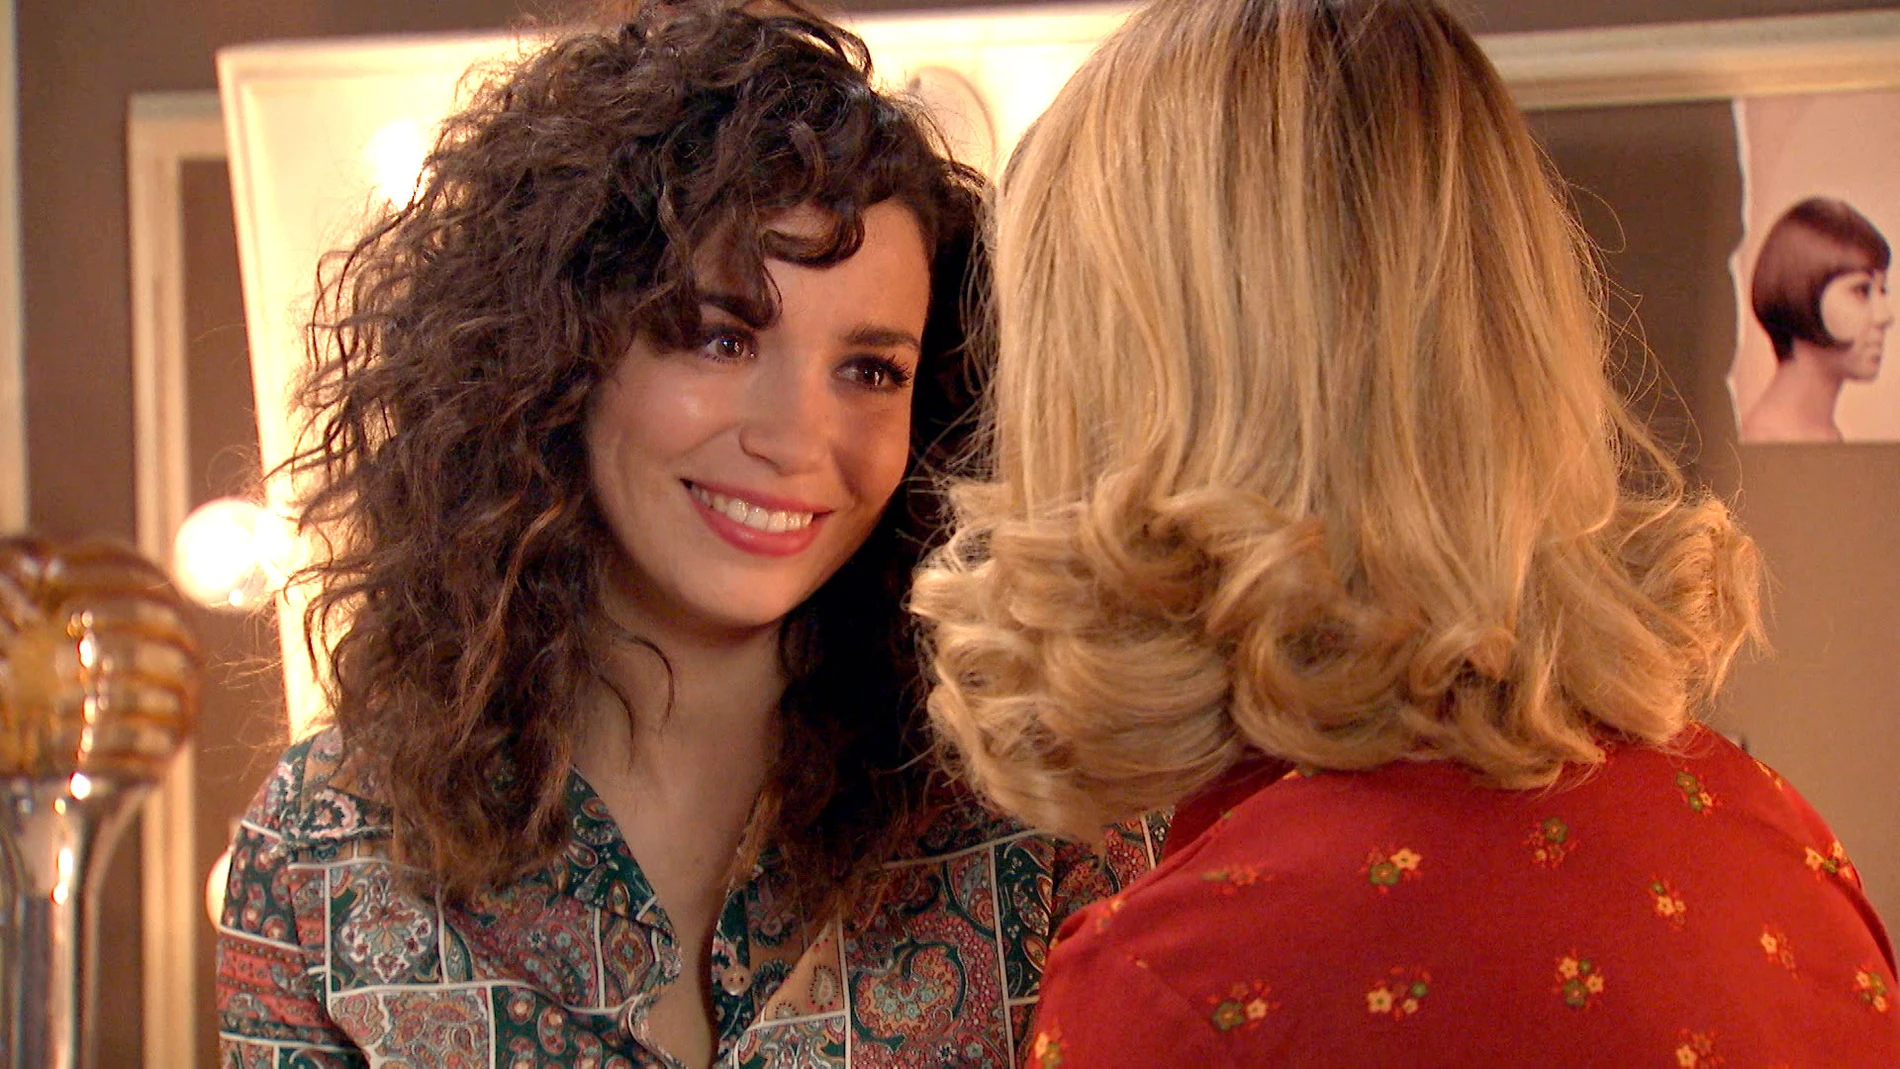 Amelia calma la inseguridad de Luisita: "Ojalá pudieras verte como yo te veo"